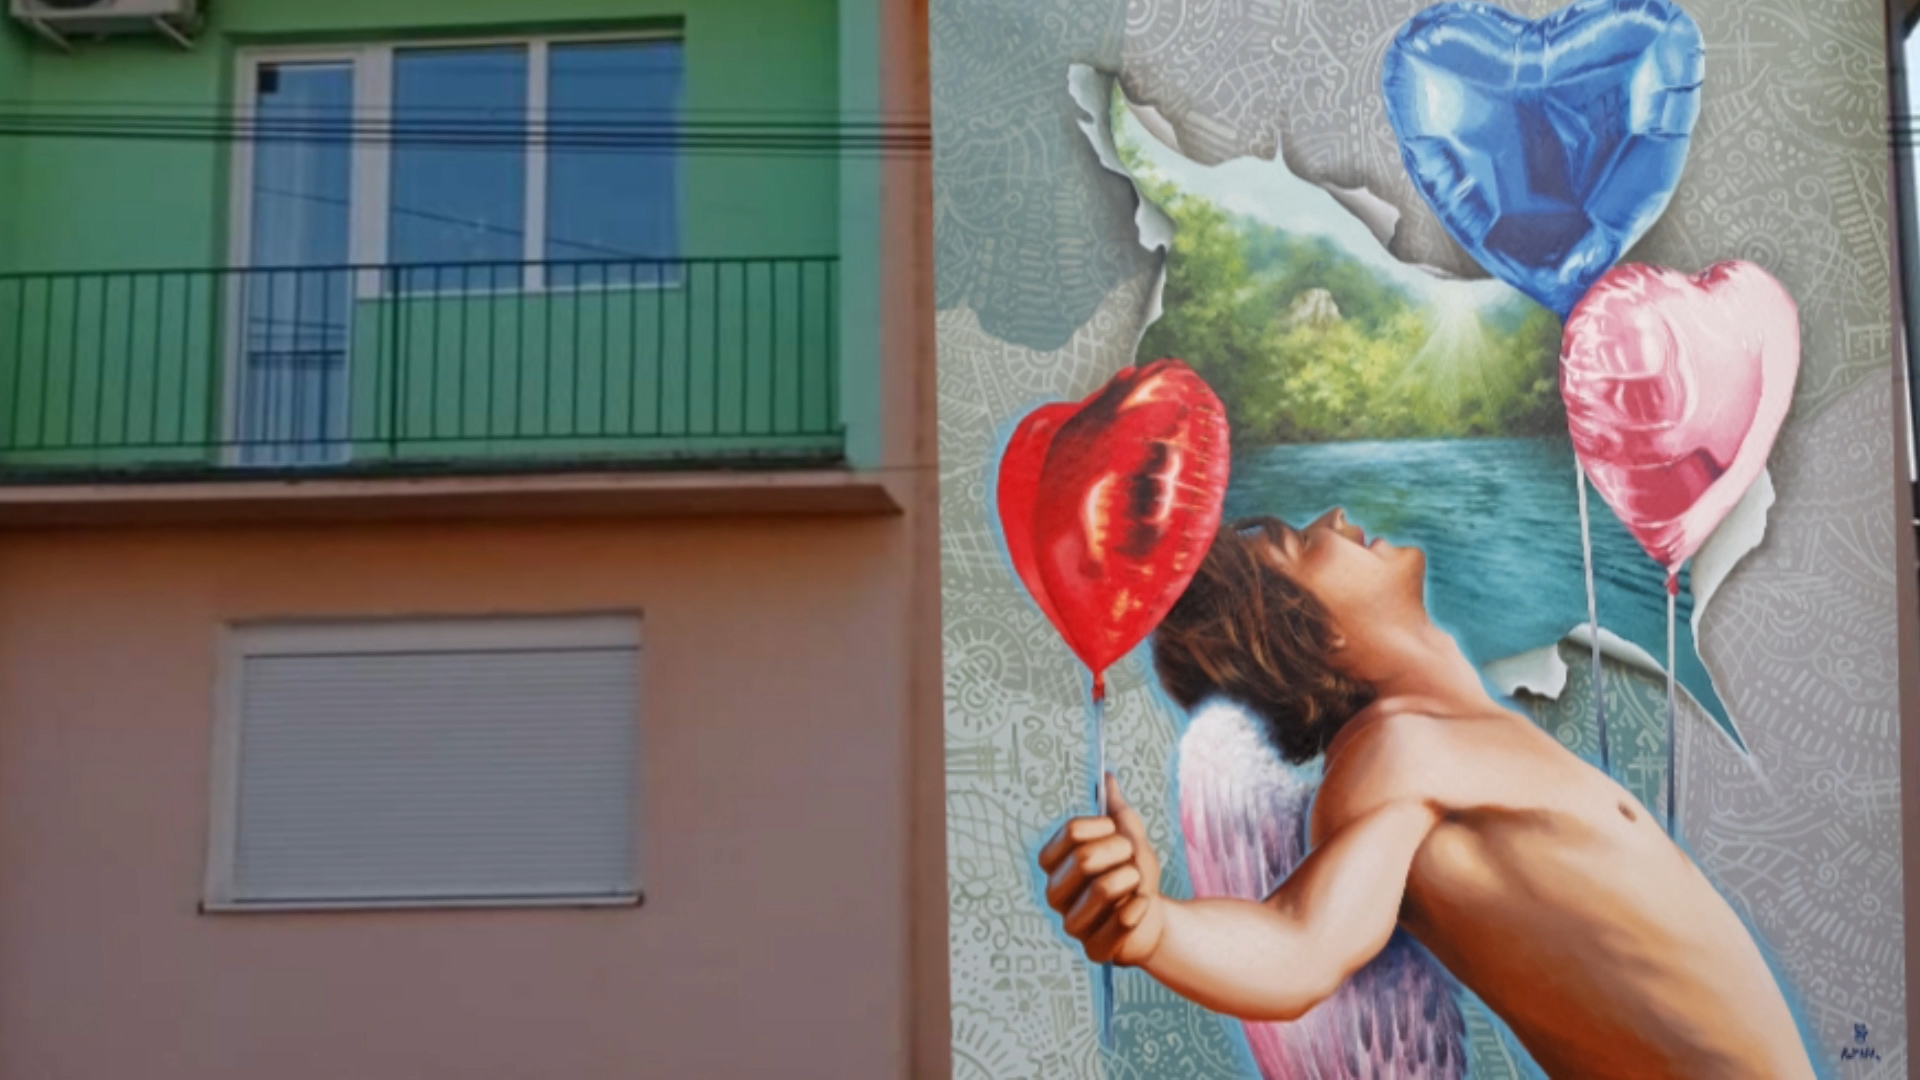 Opština Paraćin podržala izradu murala autorke Marije Komarac